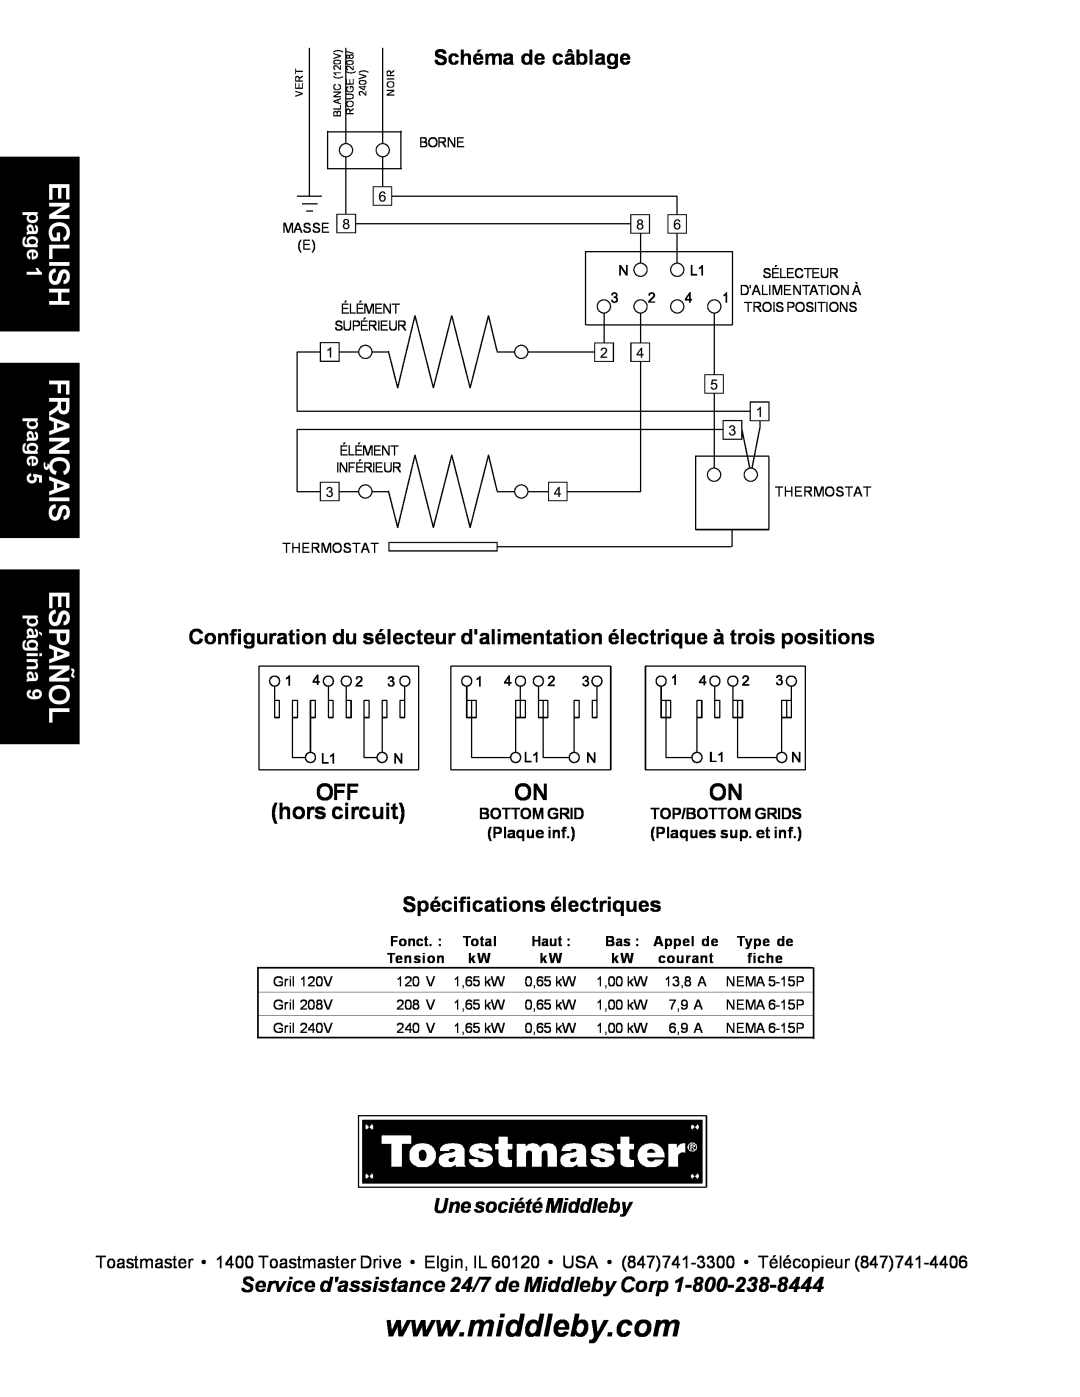 Toastmaster A710S hors circuit, Schéma de câblage, Configuration du sélecteur dalimentation électrique à trois positions 